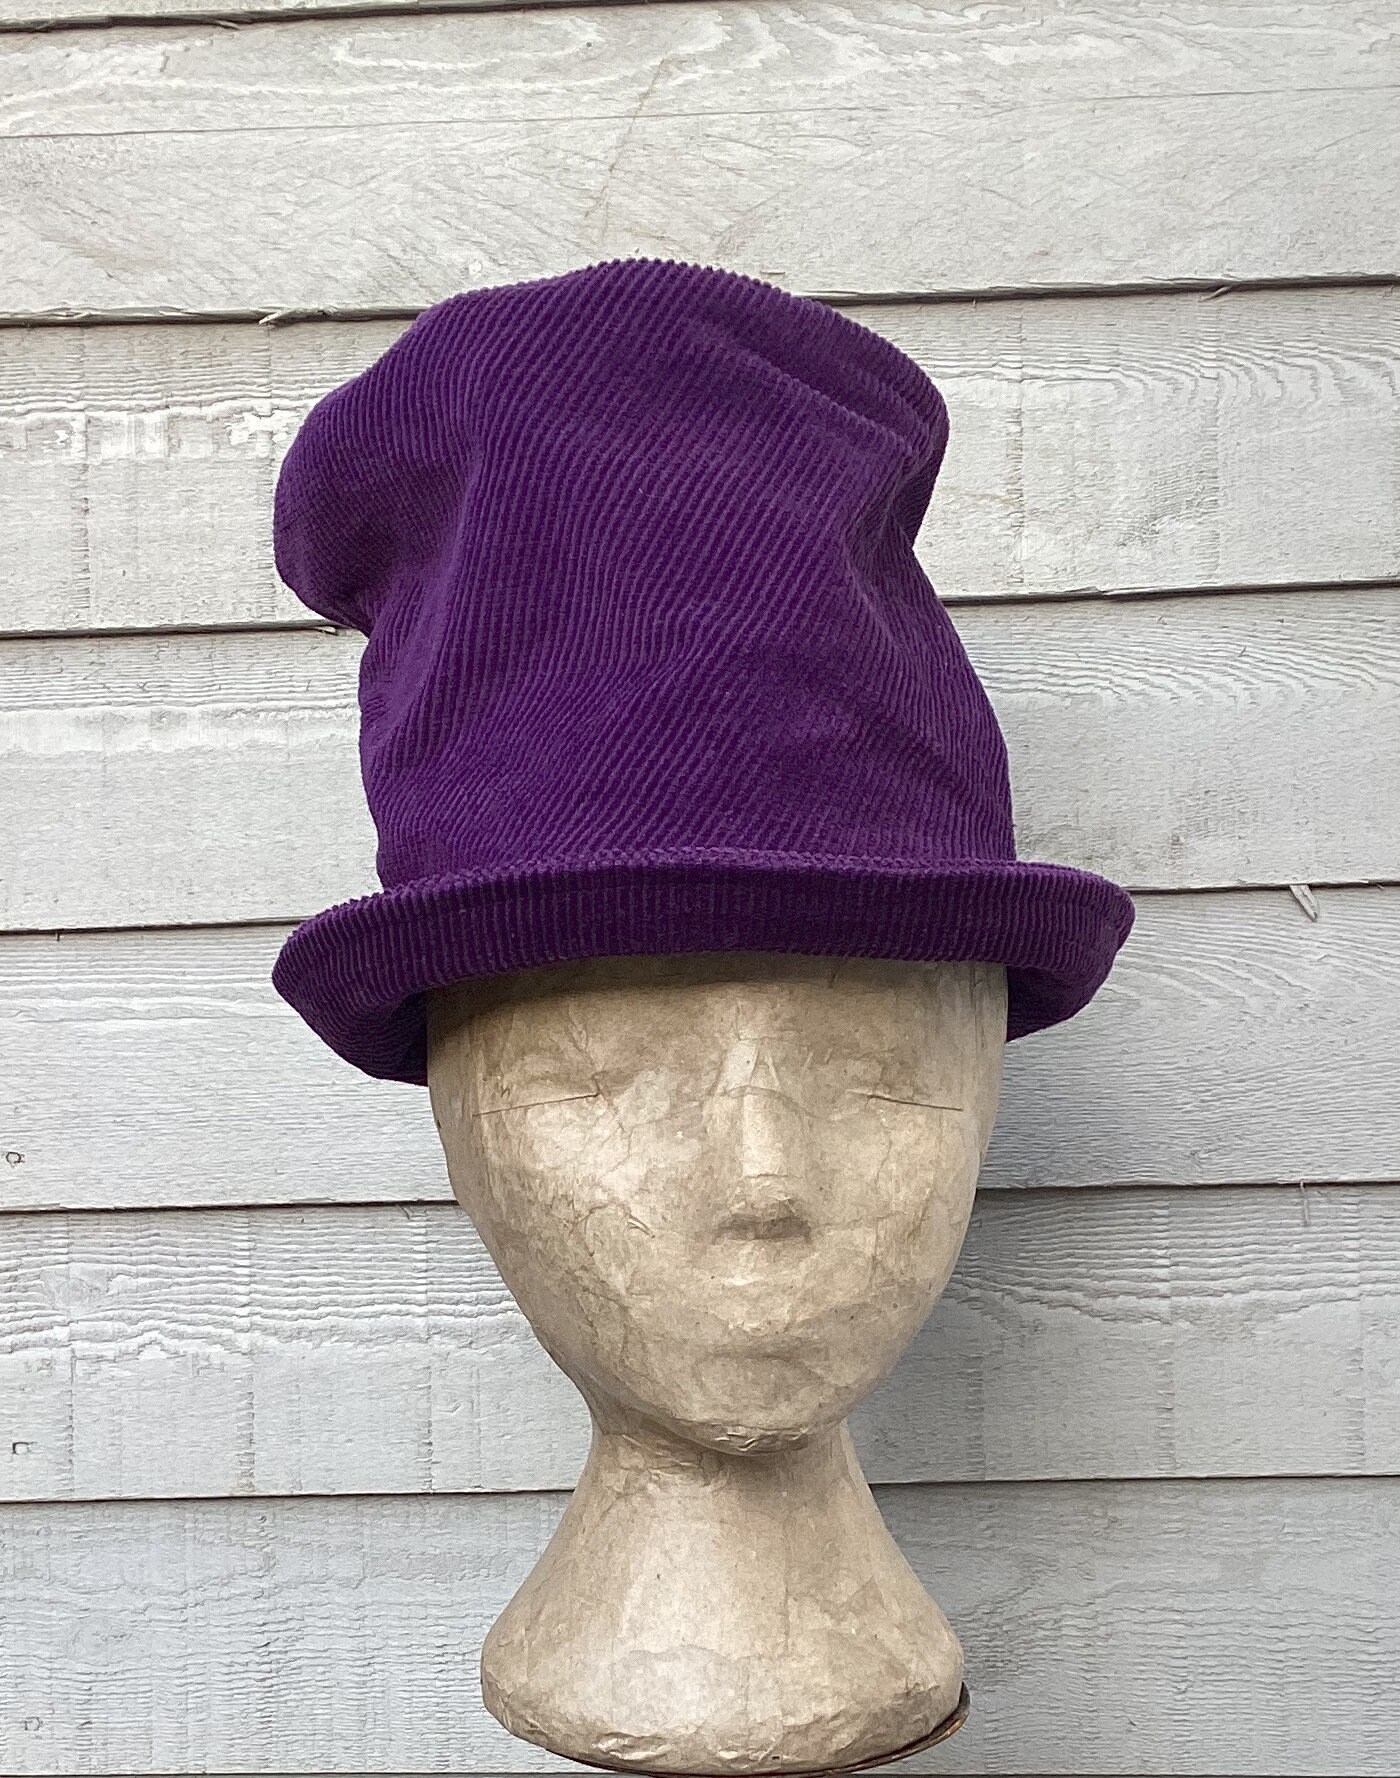 Sombrero de copa marrón alto para hombre, sombrero loco de mago Wonka,  accesorio para disfraz de Halloween, color marrón, talla única, Marrón